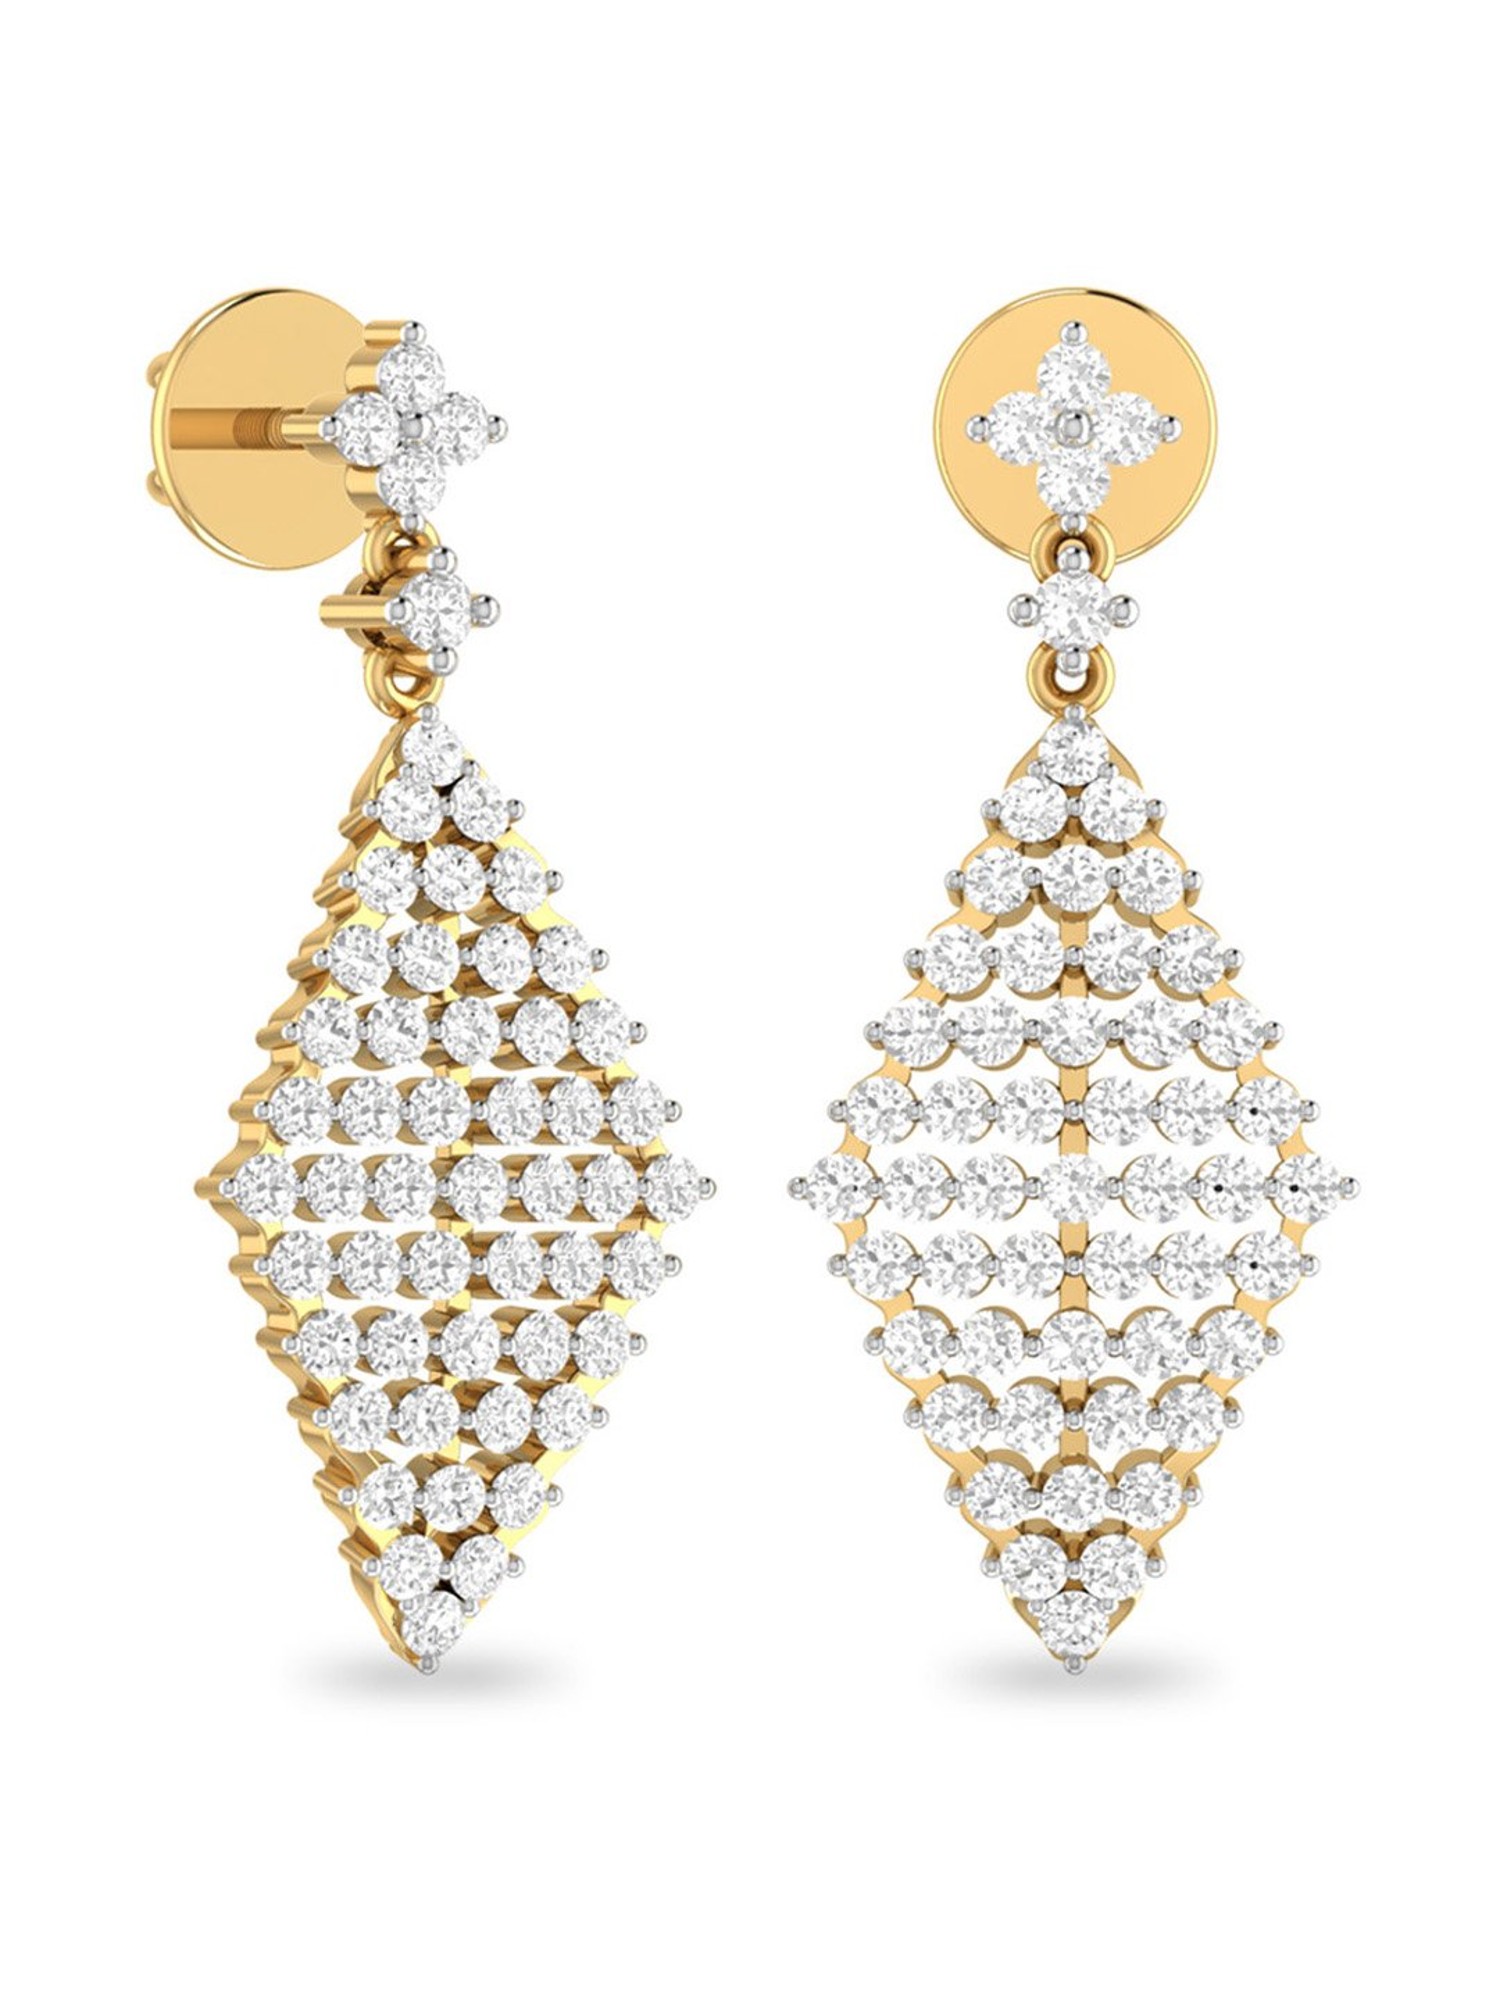 The Orbart Diamond Earrings by PC Jeweller